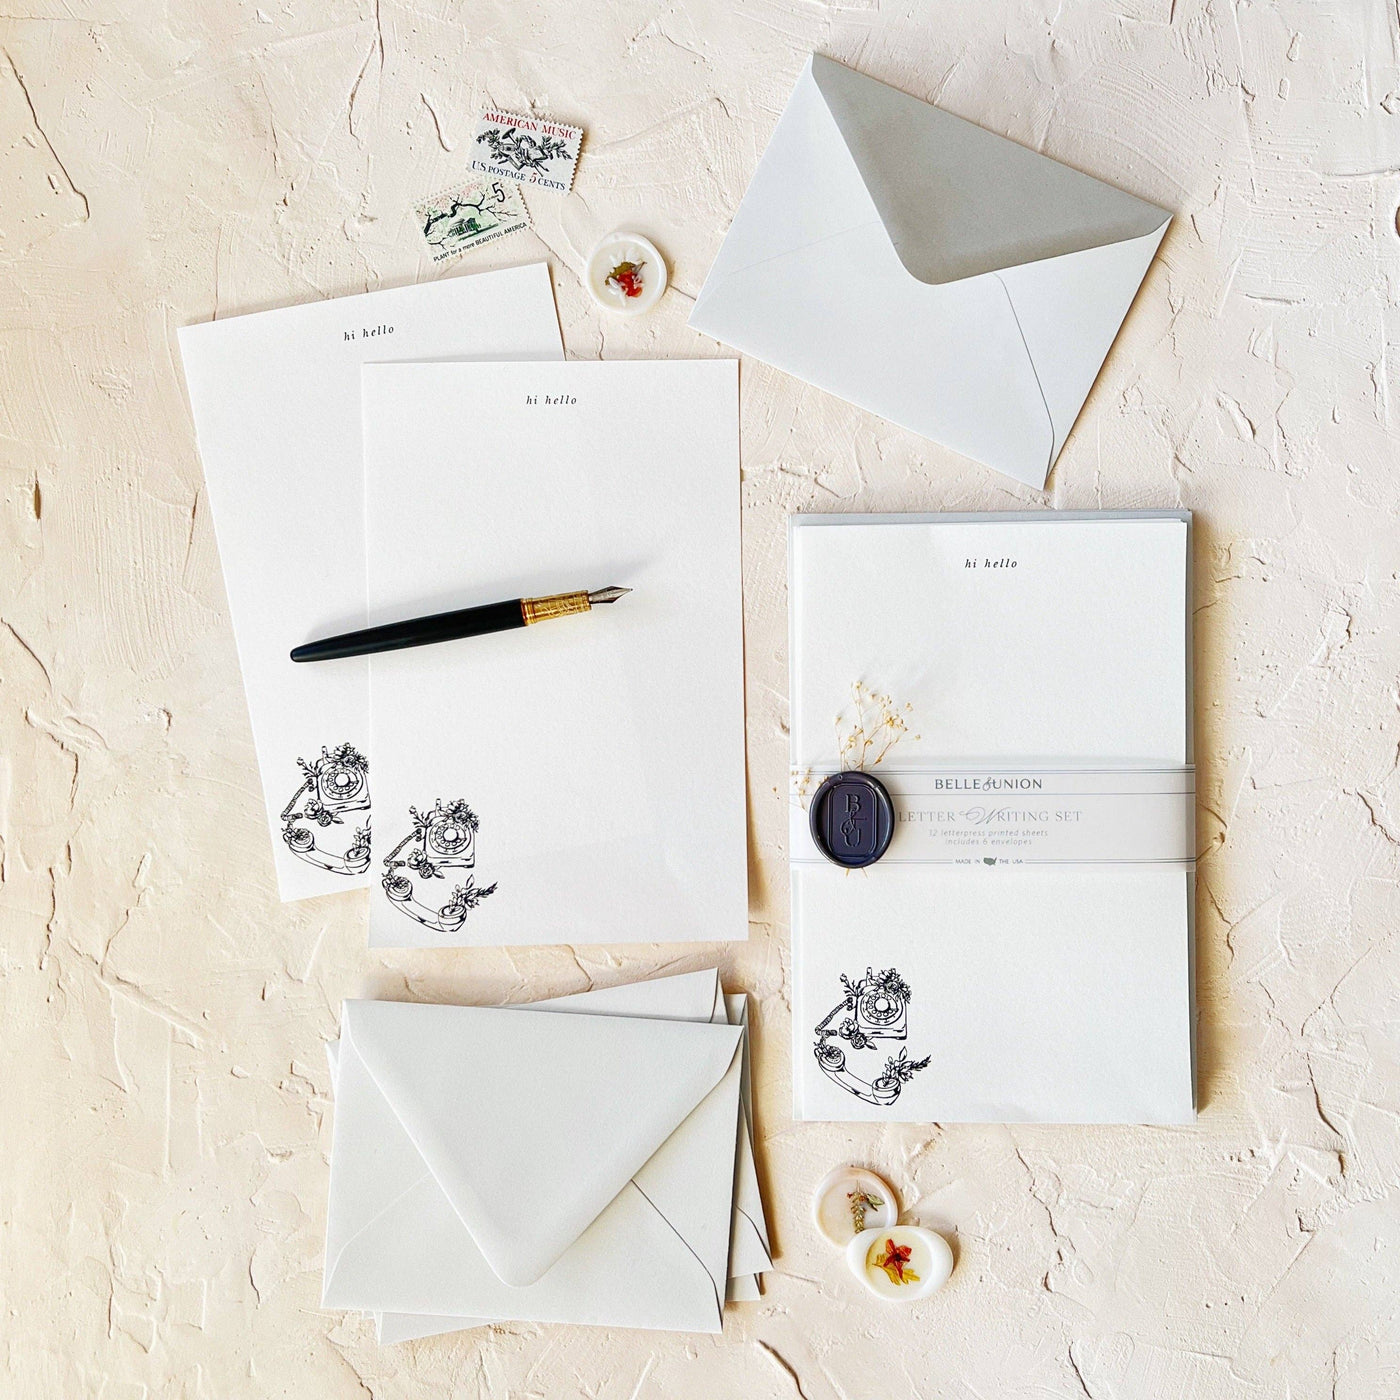 Hi Hello Letter Writing Kit – Tiramisu Paperie